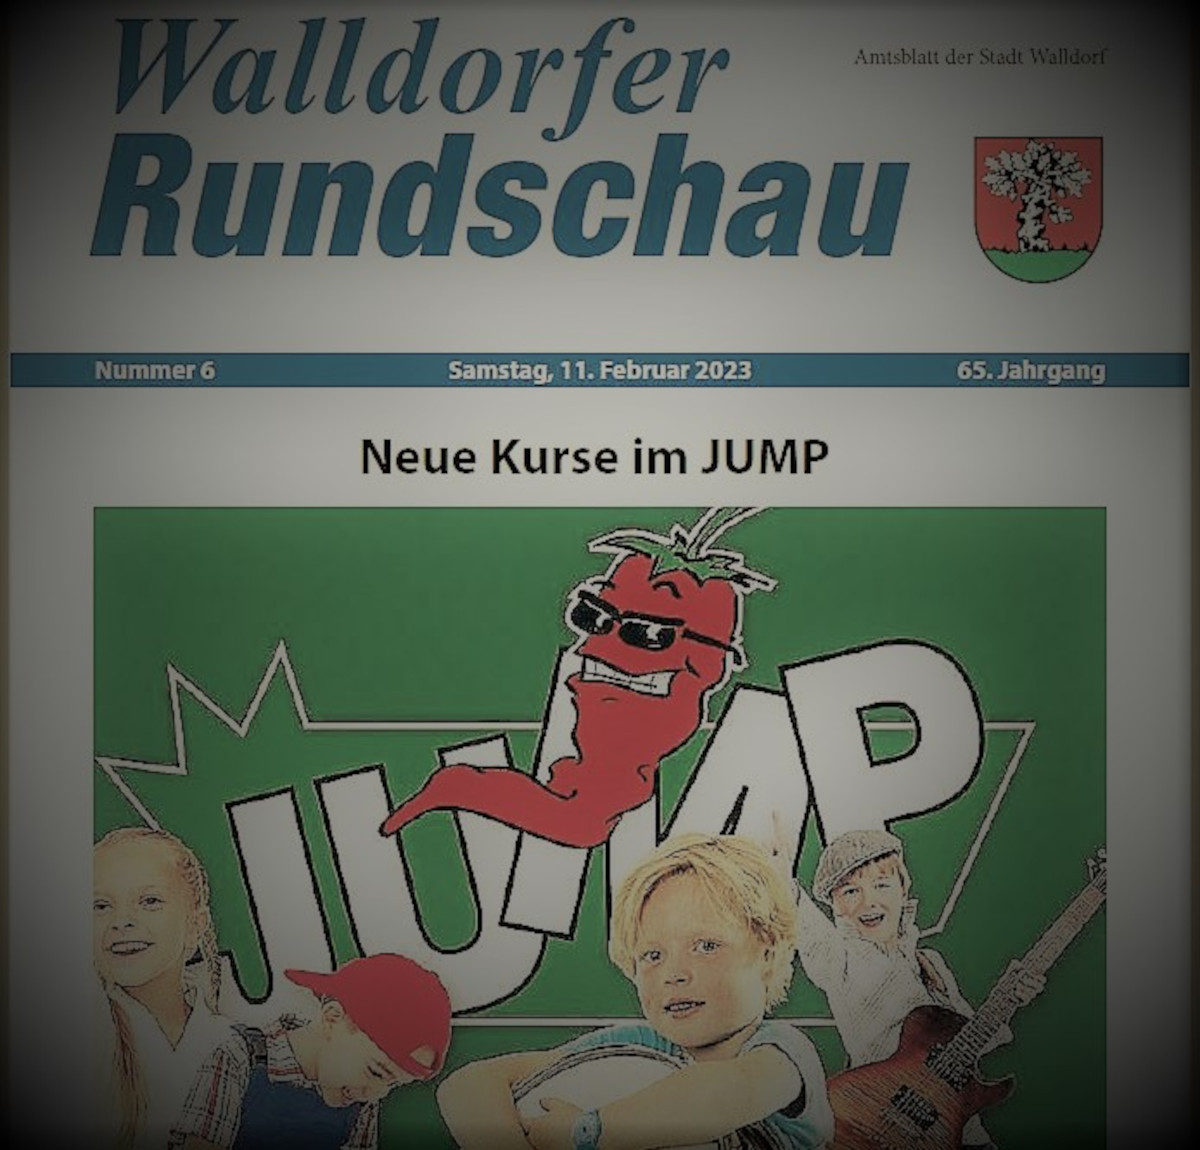 Die Walldorfer Rundschau 2023 Nr. 6 als E-paper | Bildschirmabgriff